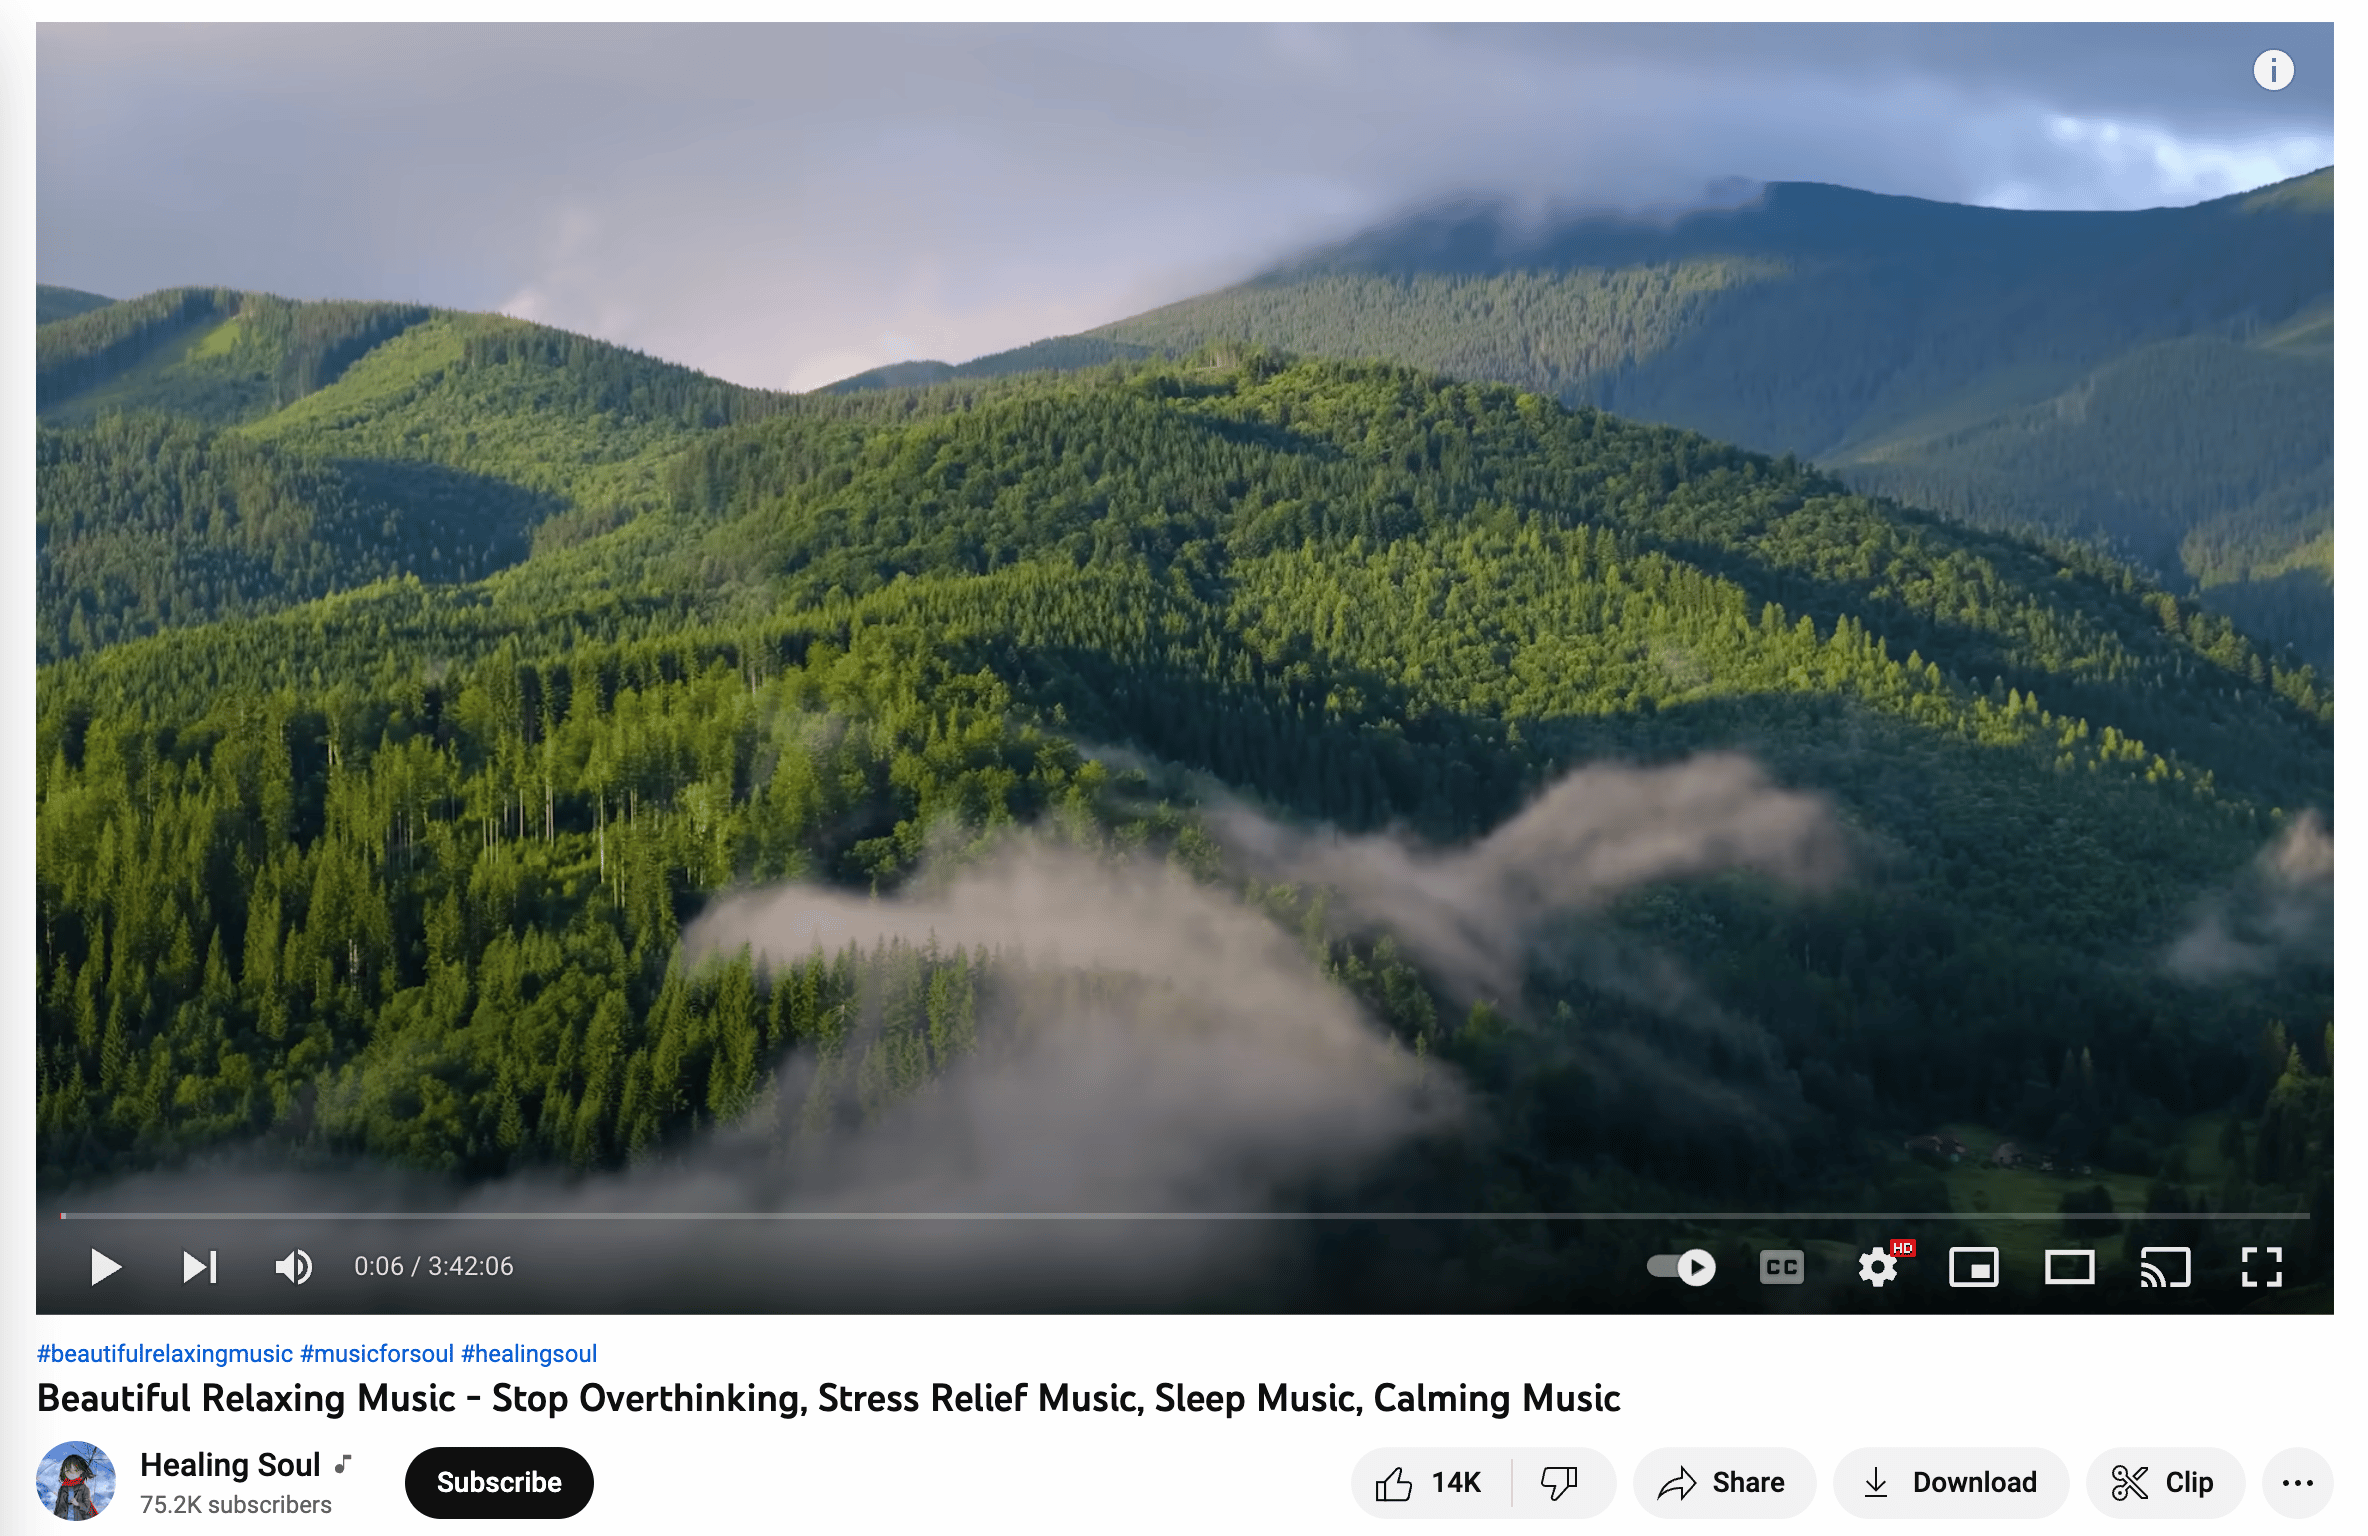 healing soul meditation video showing cloudy green mountain top